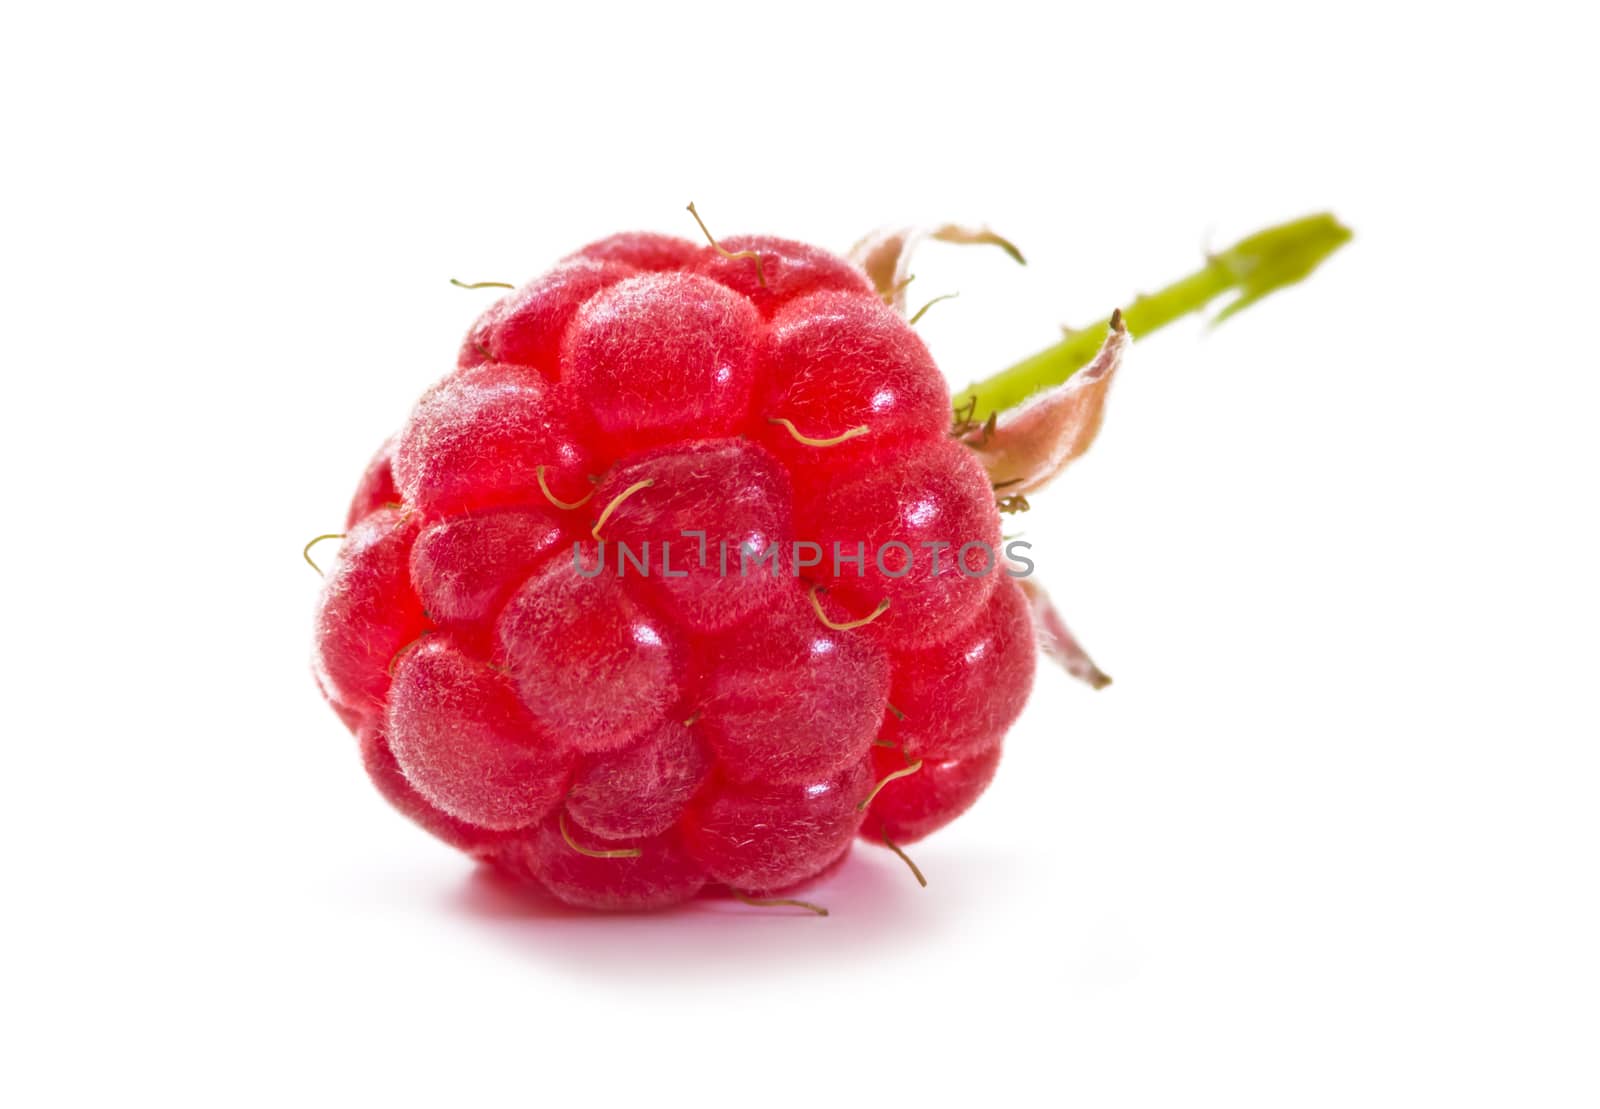 sweet ripe raspberries on a white background